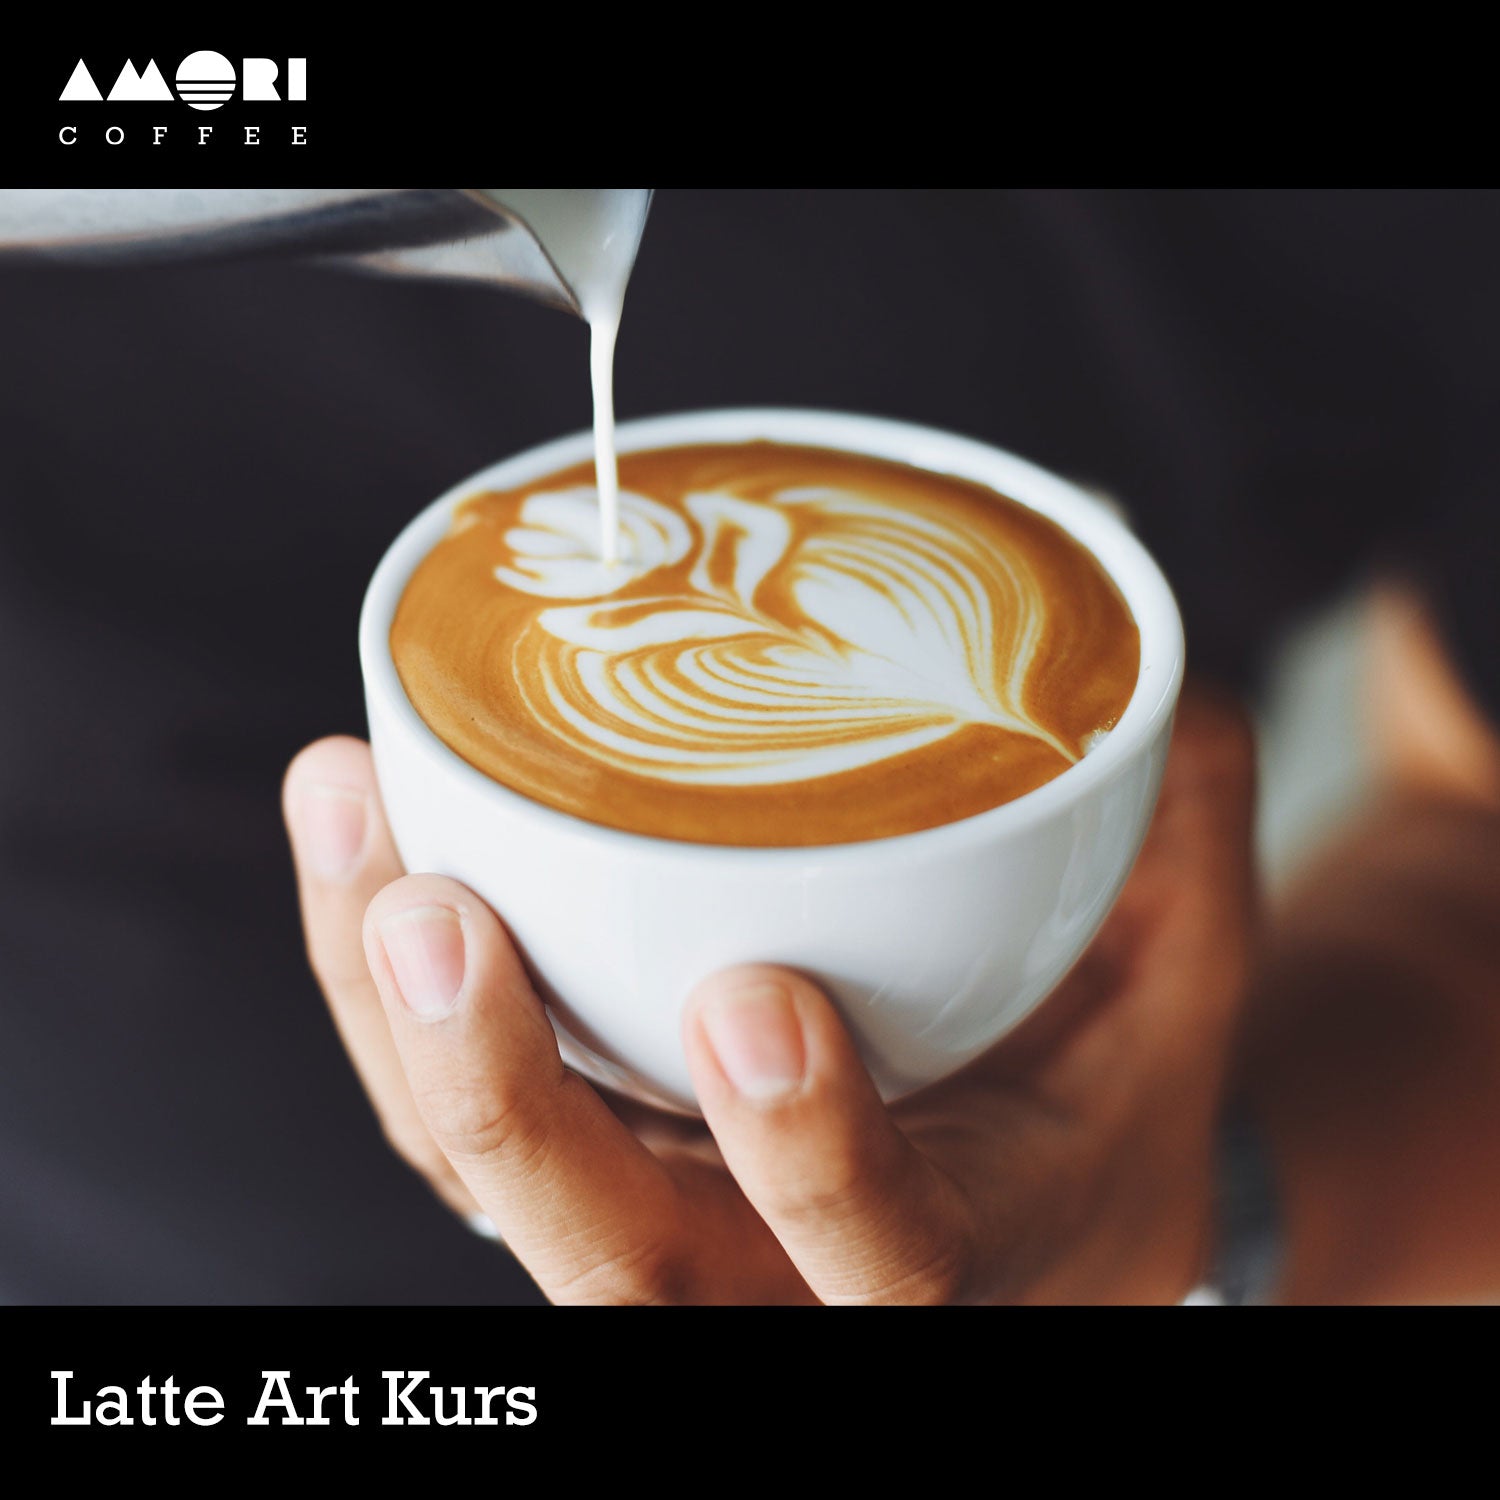 AMORI Coffee Latte Art Kurs